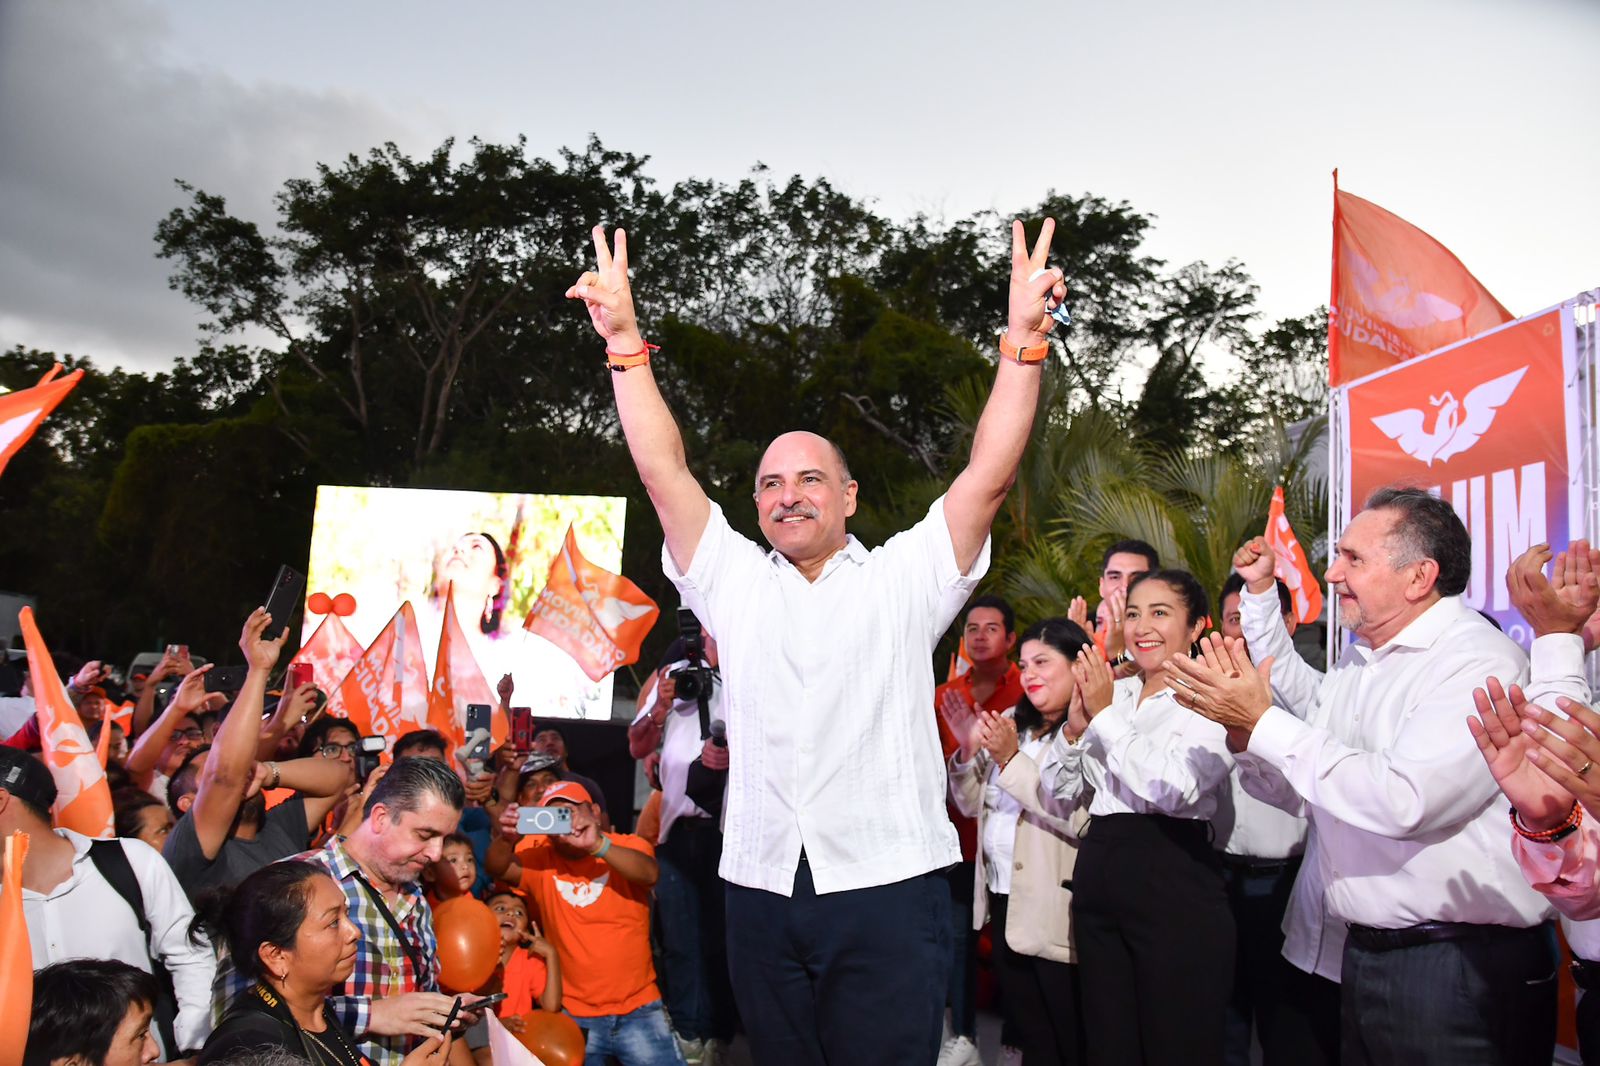 Que reine la civilidad política en el proceso electoral: Jorge Portilla